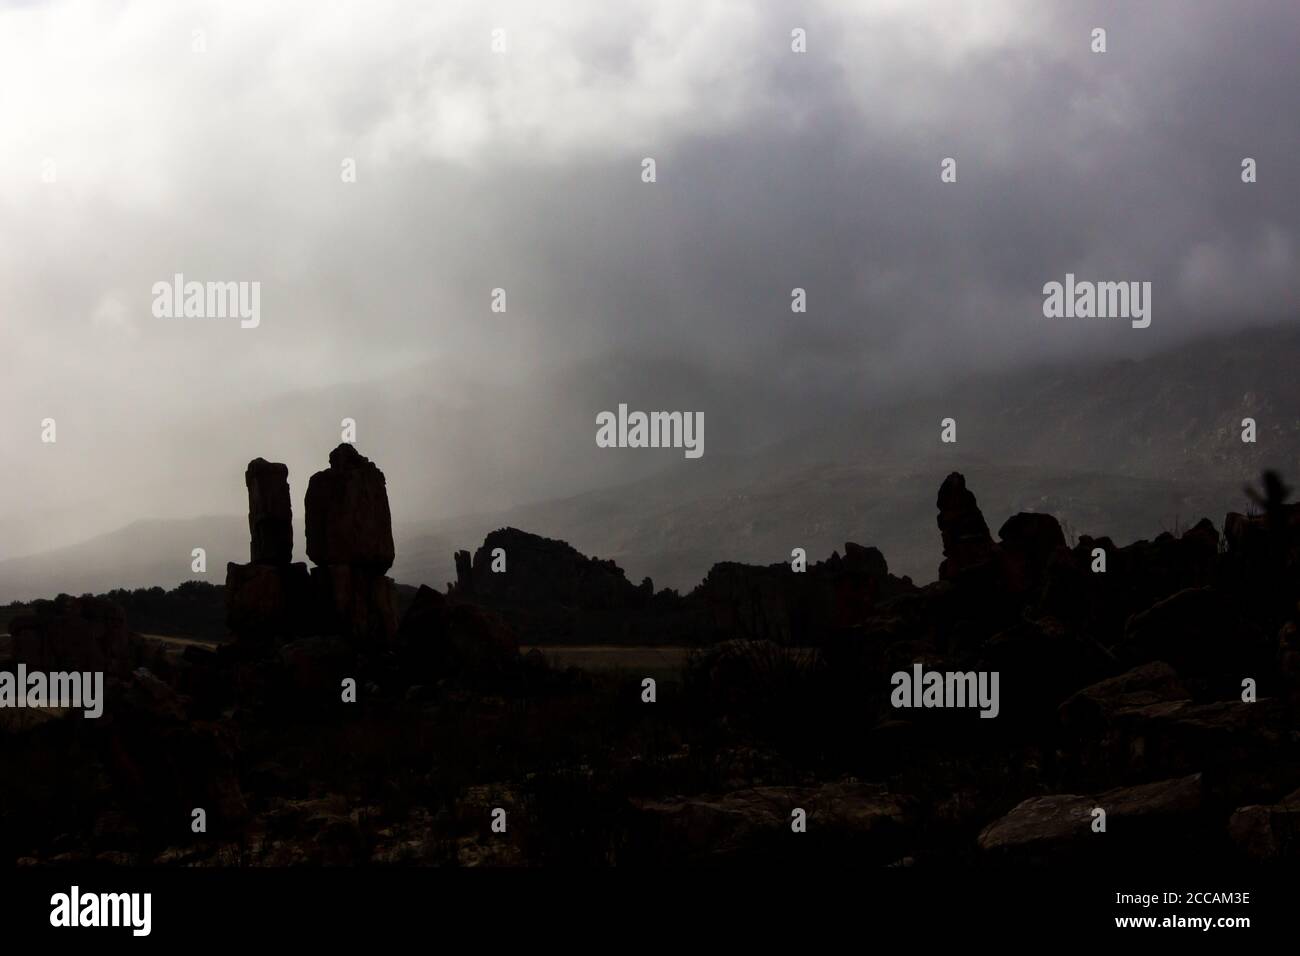 Dunstiges Licht bricht durch die dicken Regenwolken in den Cederberg Bergen in Südafrika, mit den Silhouetten des seltsamen Sandstein-Rock-Formats Stockfoto